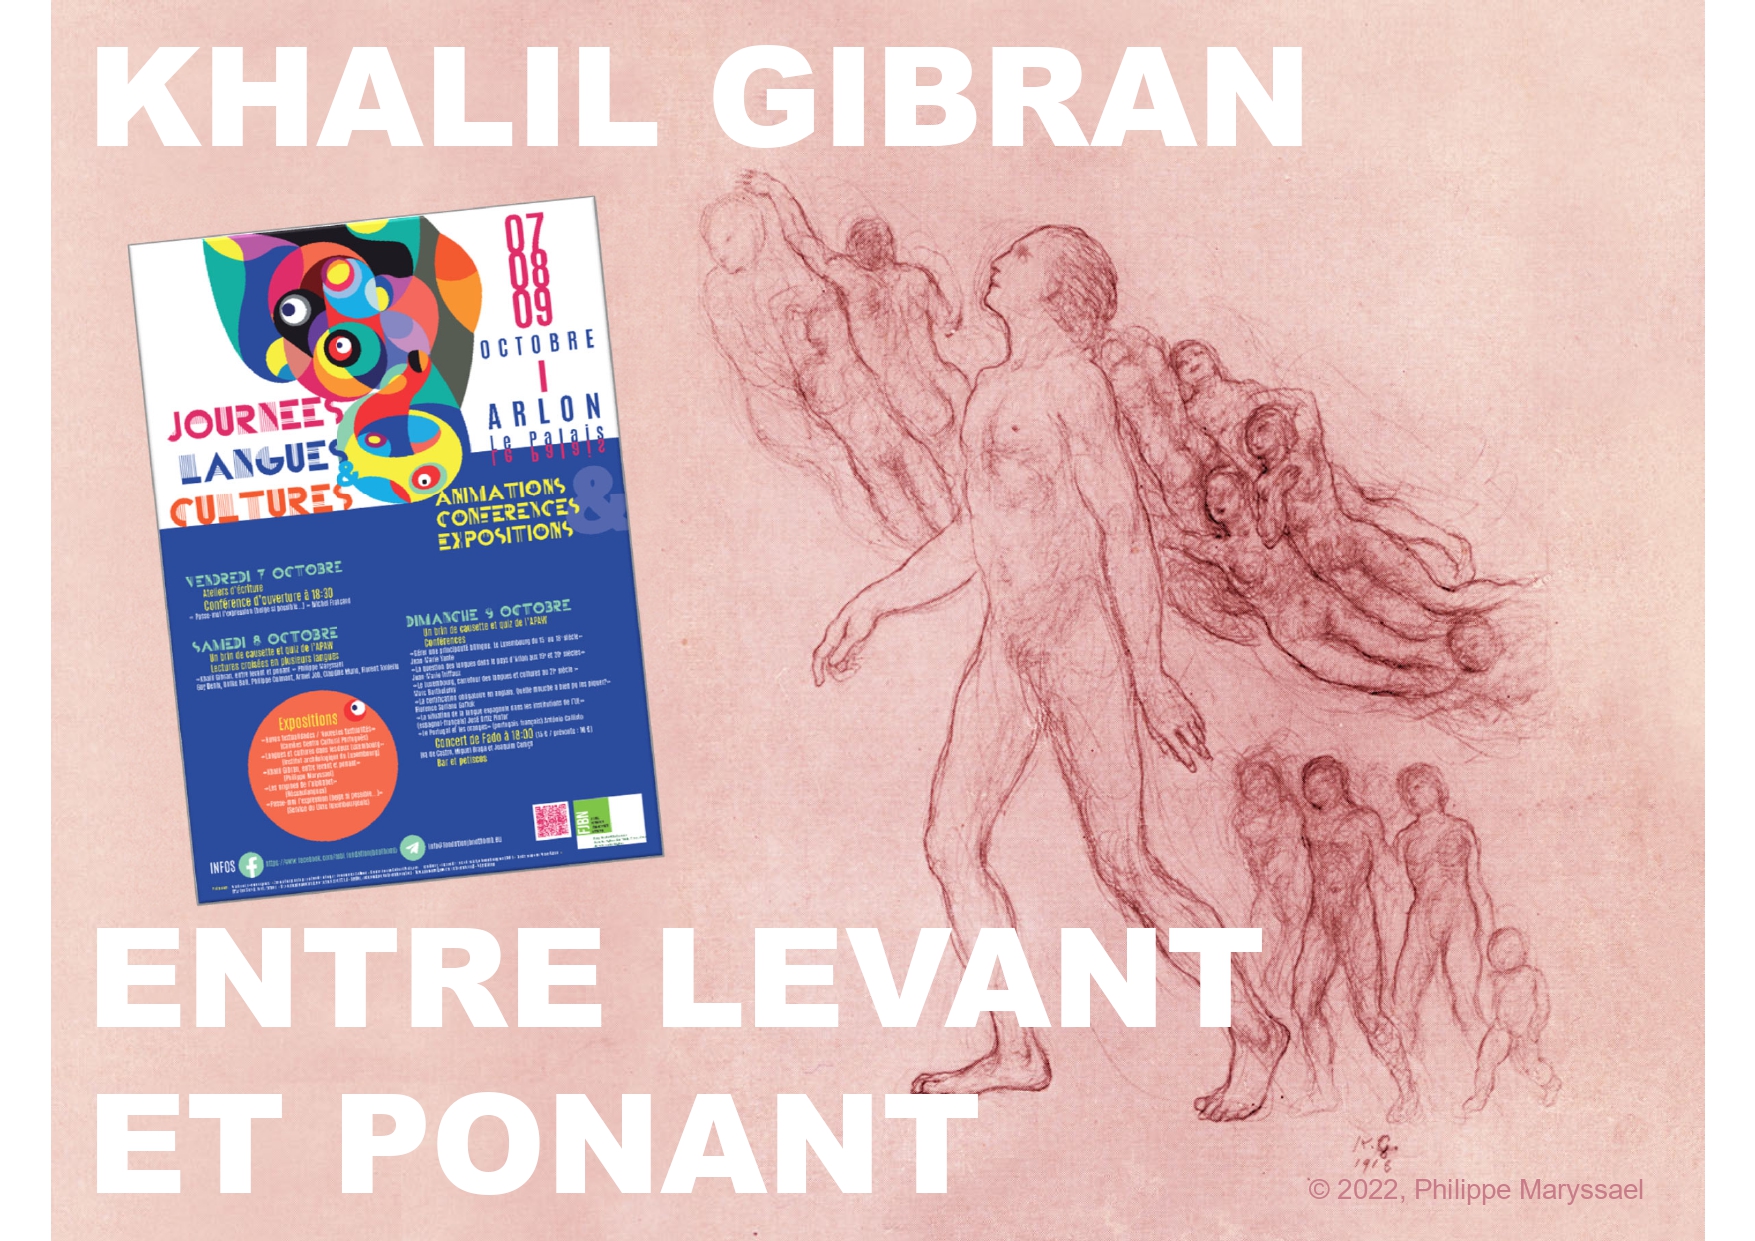 Philippe Maryssael, présentation: "Khalil Gibran: Entre Levant et Ponant", Arlon (Belgique), 8 Octobre 2022 (booklet).